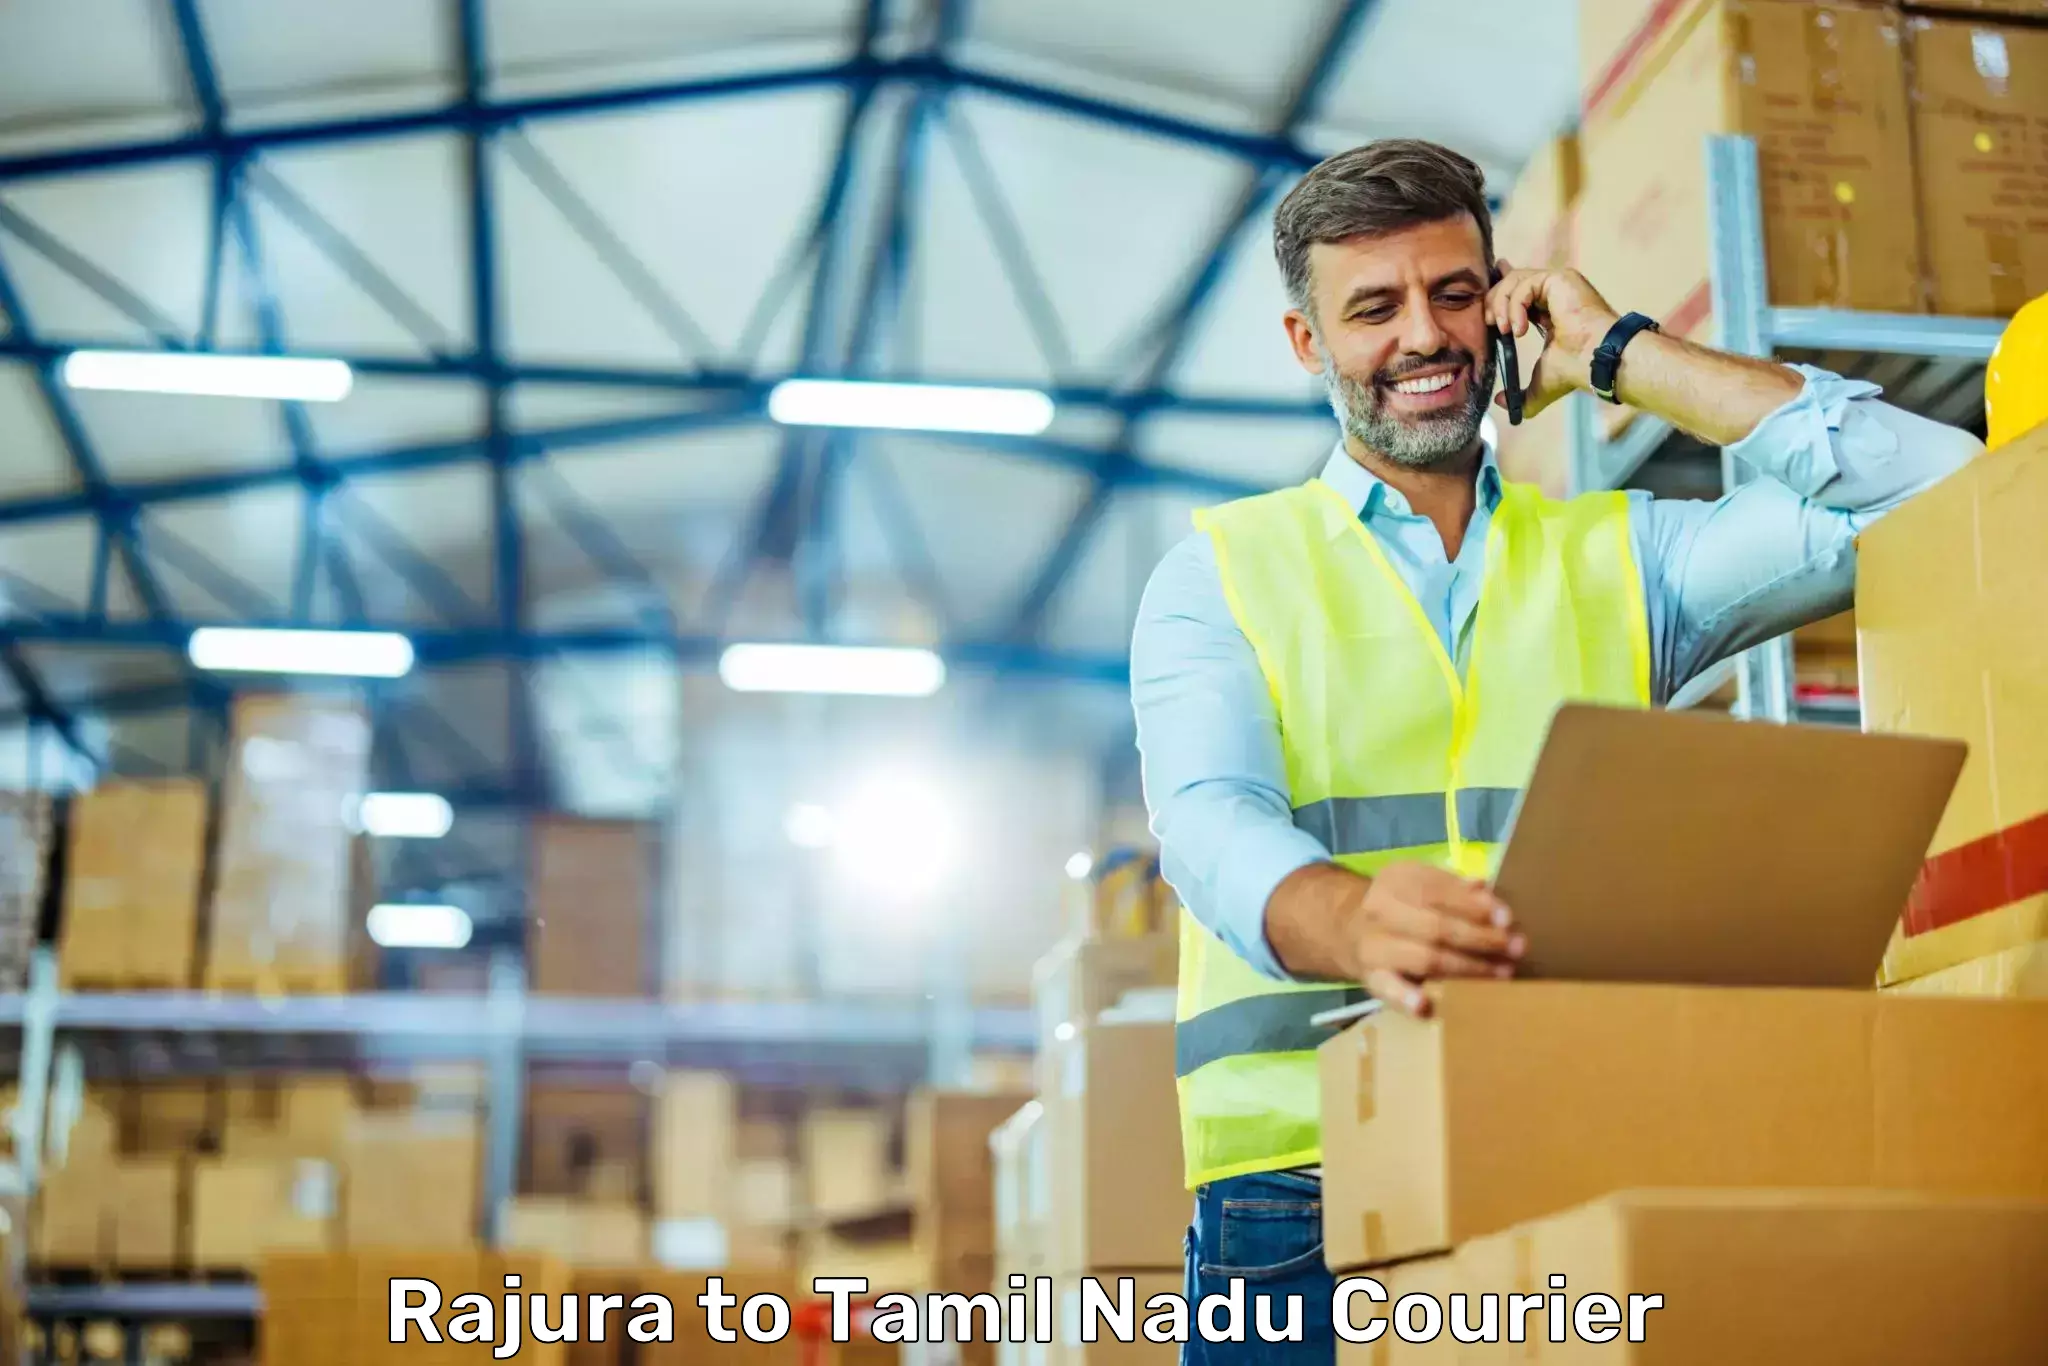 24/7 shipping services Rajura to Papanasam